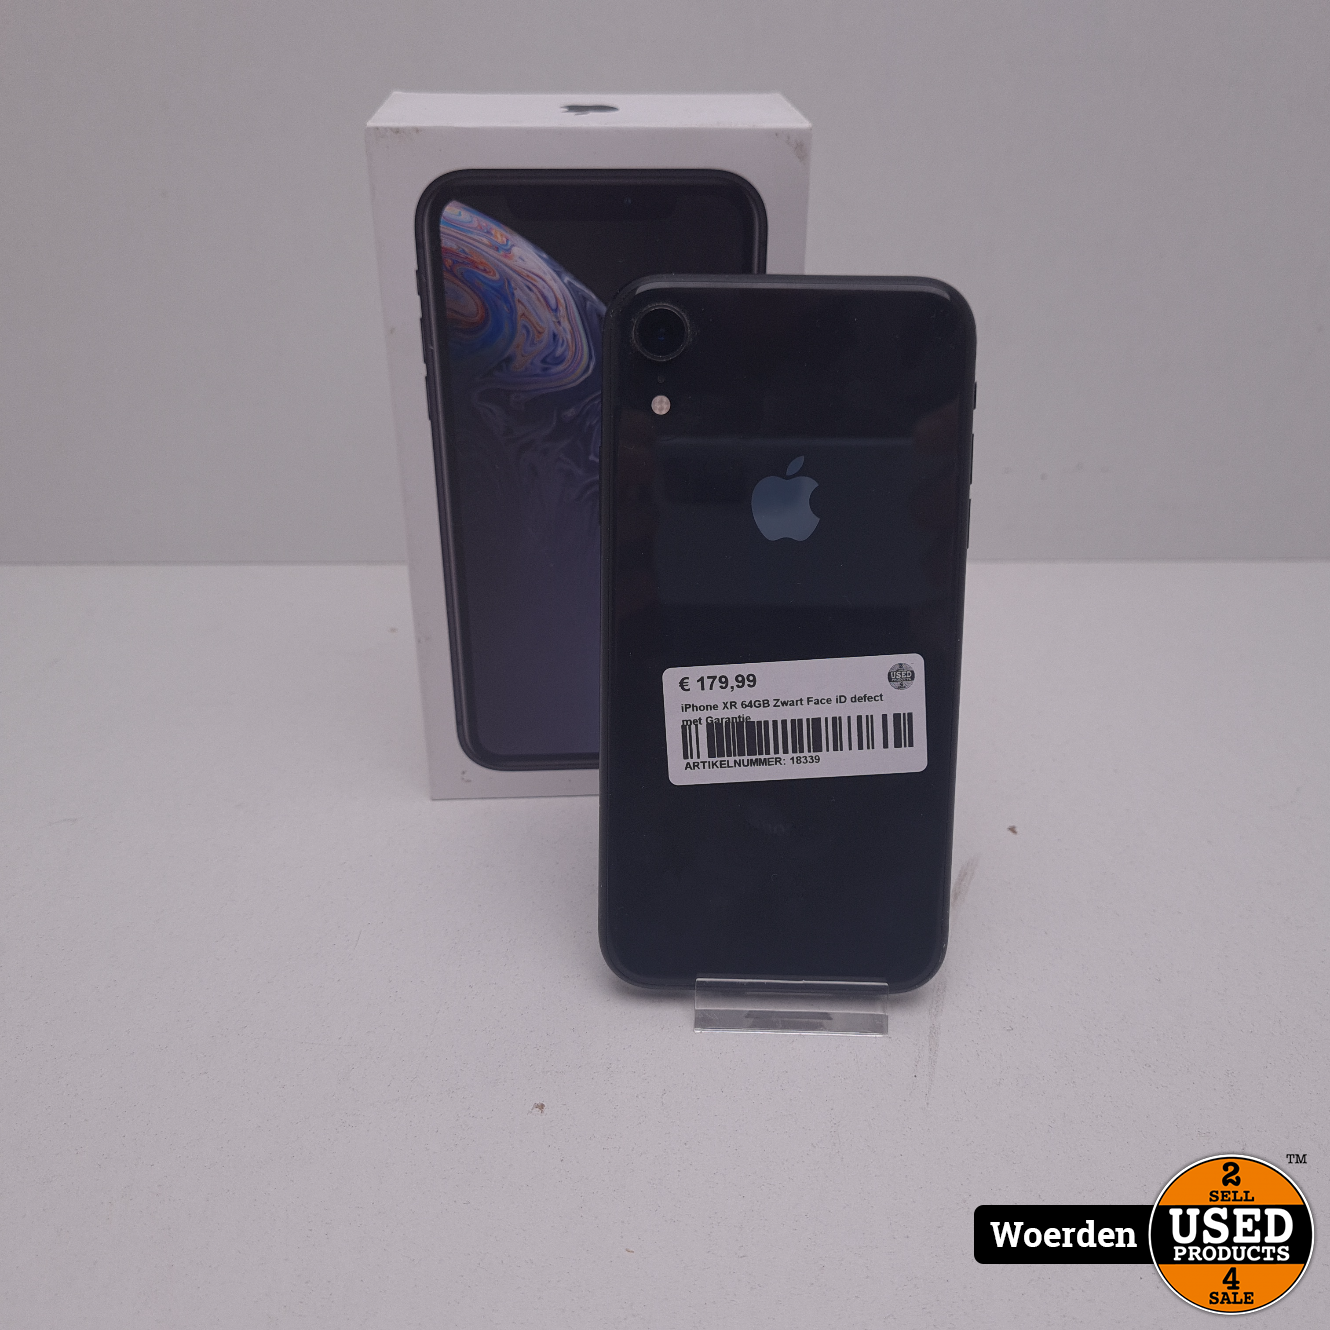 iPhone XR 64GB Zwart iD defect met - Products Woerden